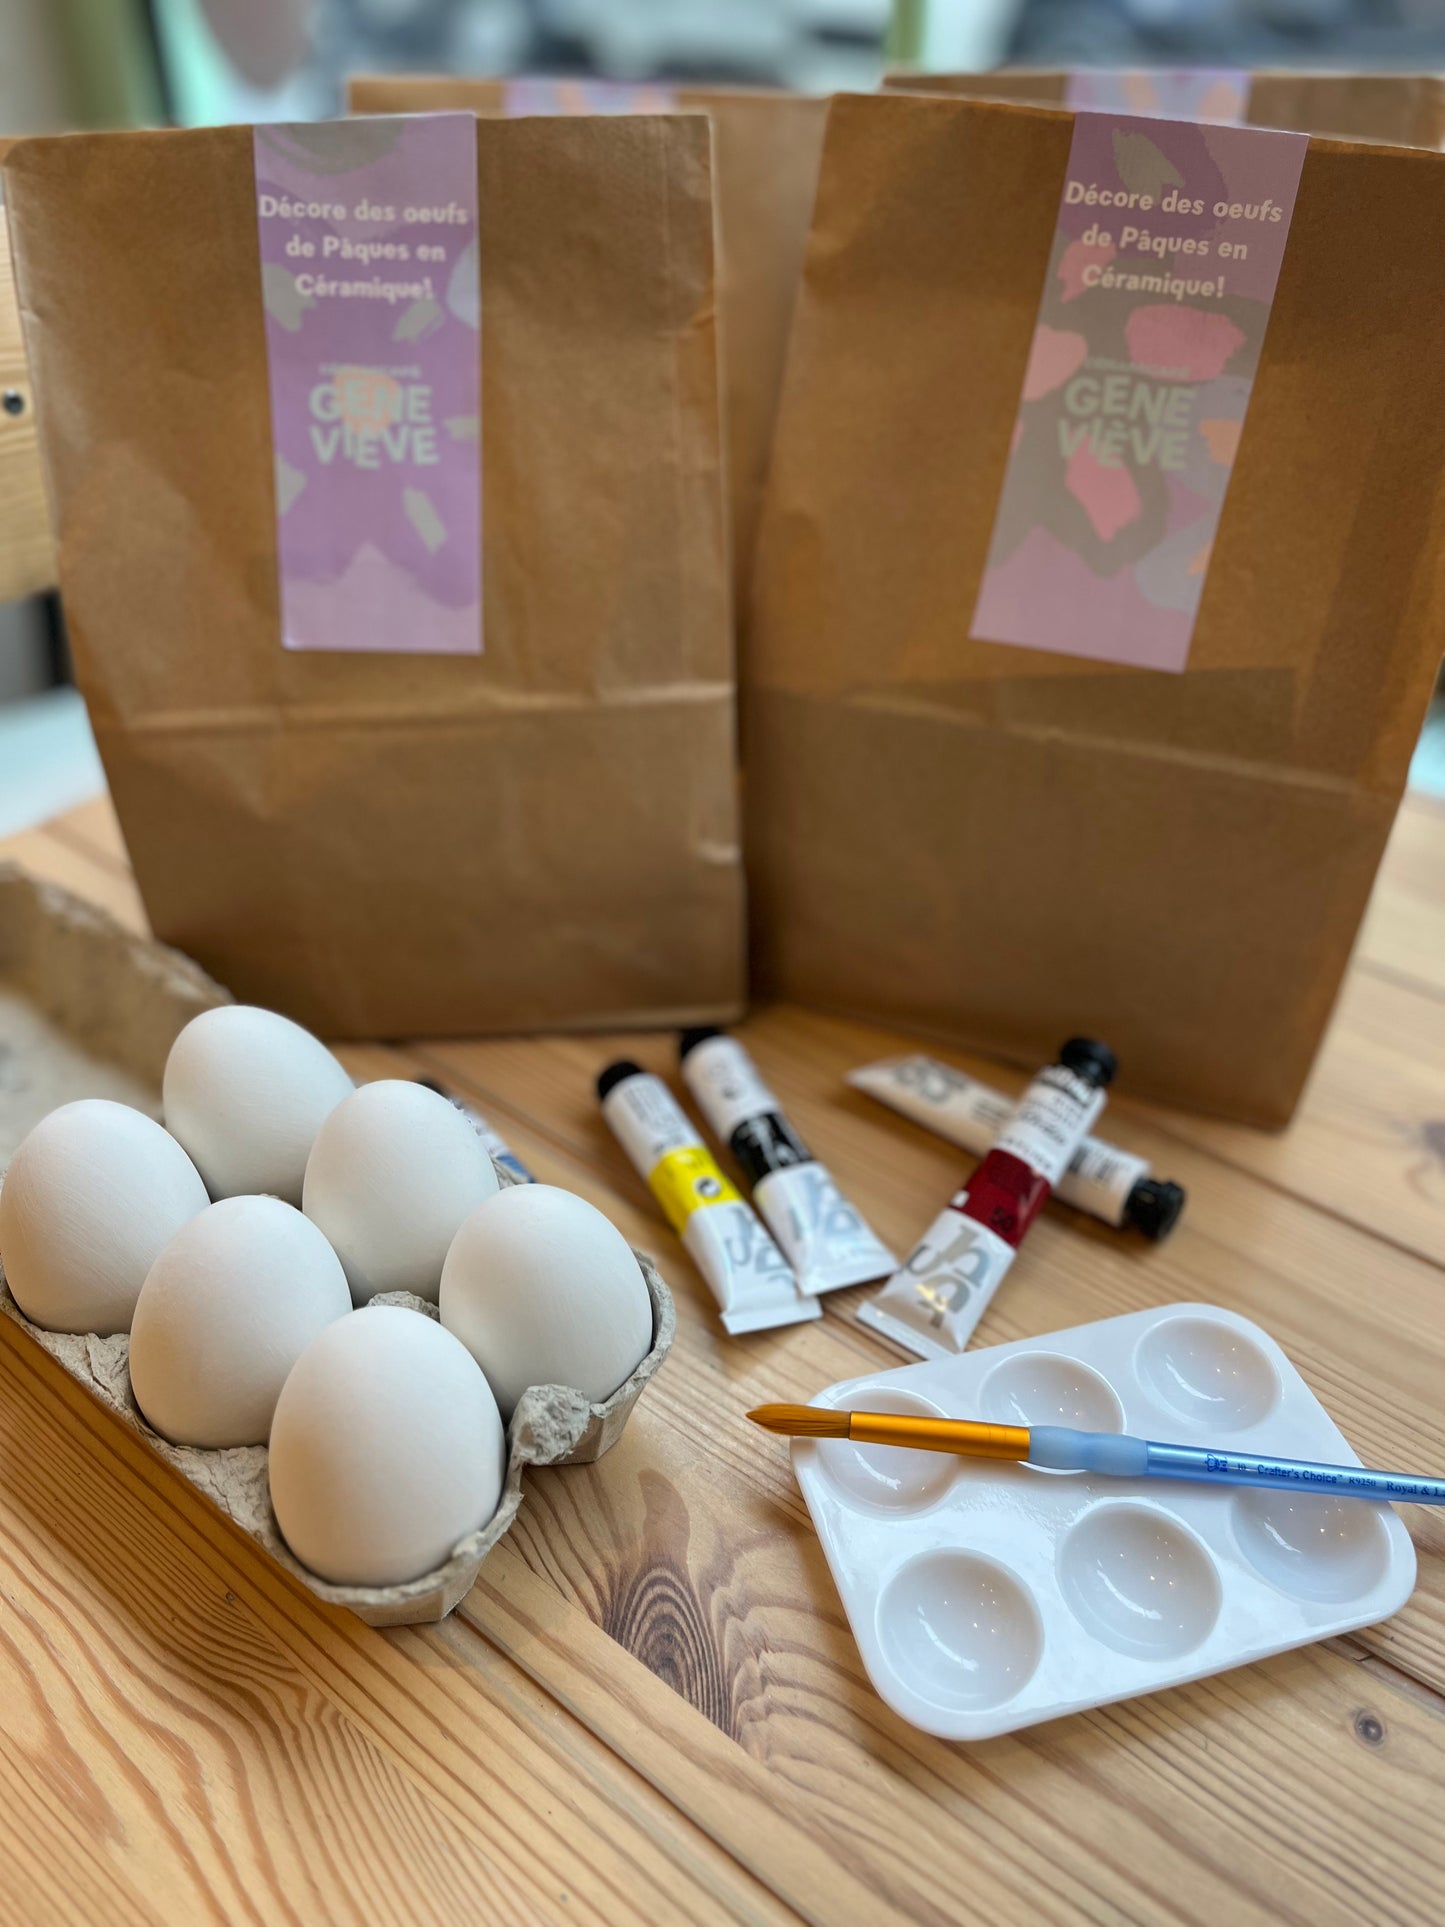 Kit Peinture sur céramique - Décorer tes oeufs de Pâques ! (sans cuisson)